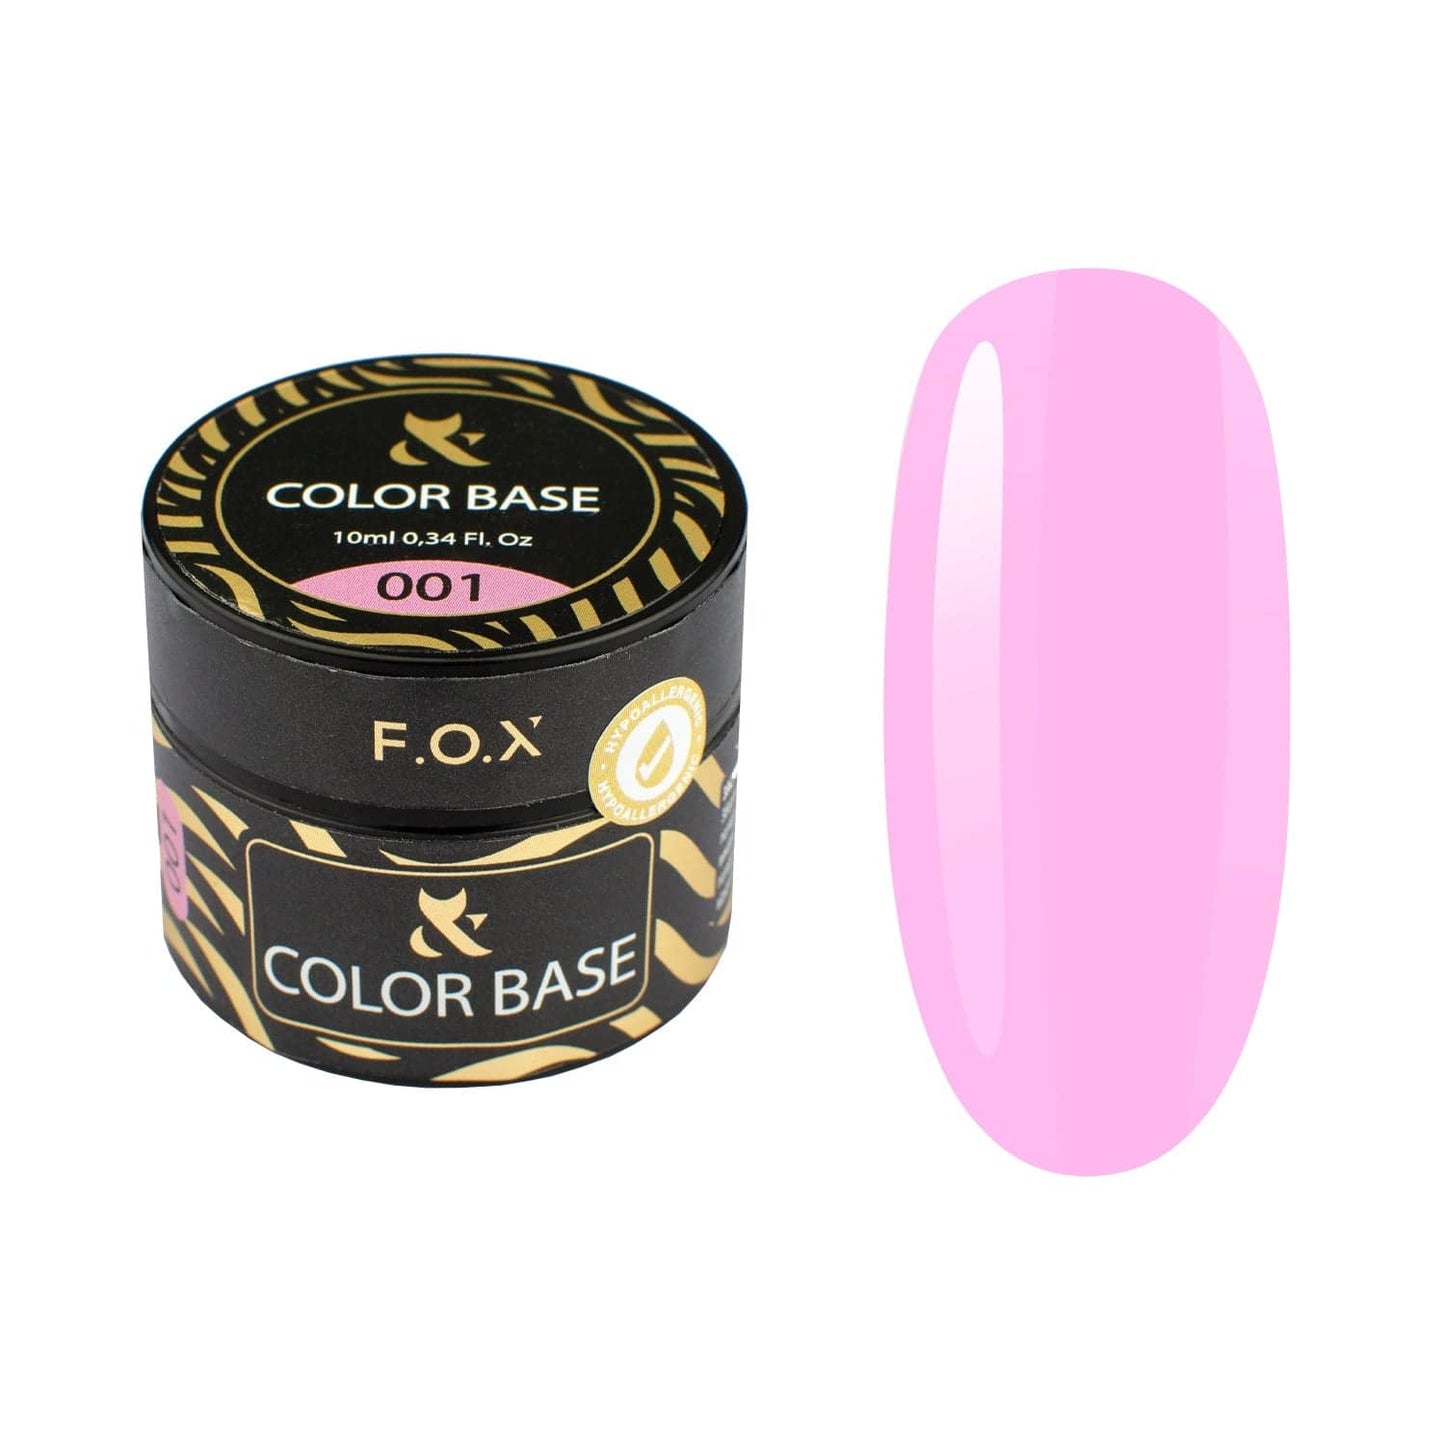 F.O.X Color base 001 - F.O.X Nails USA